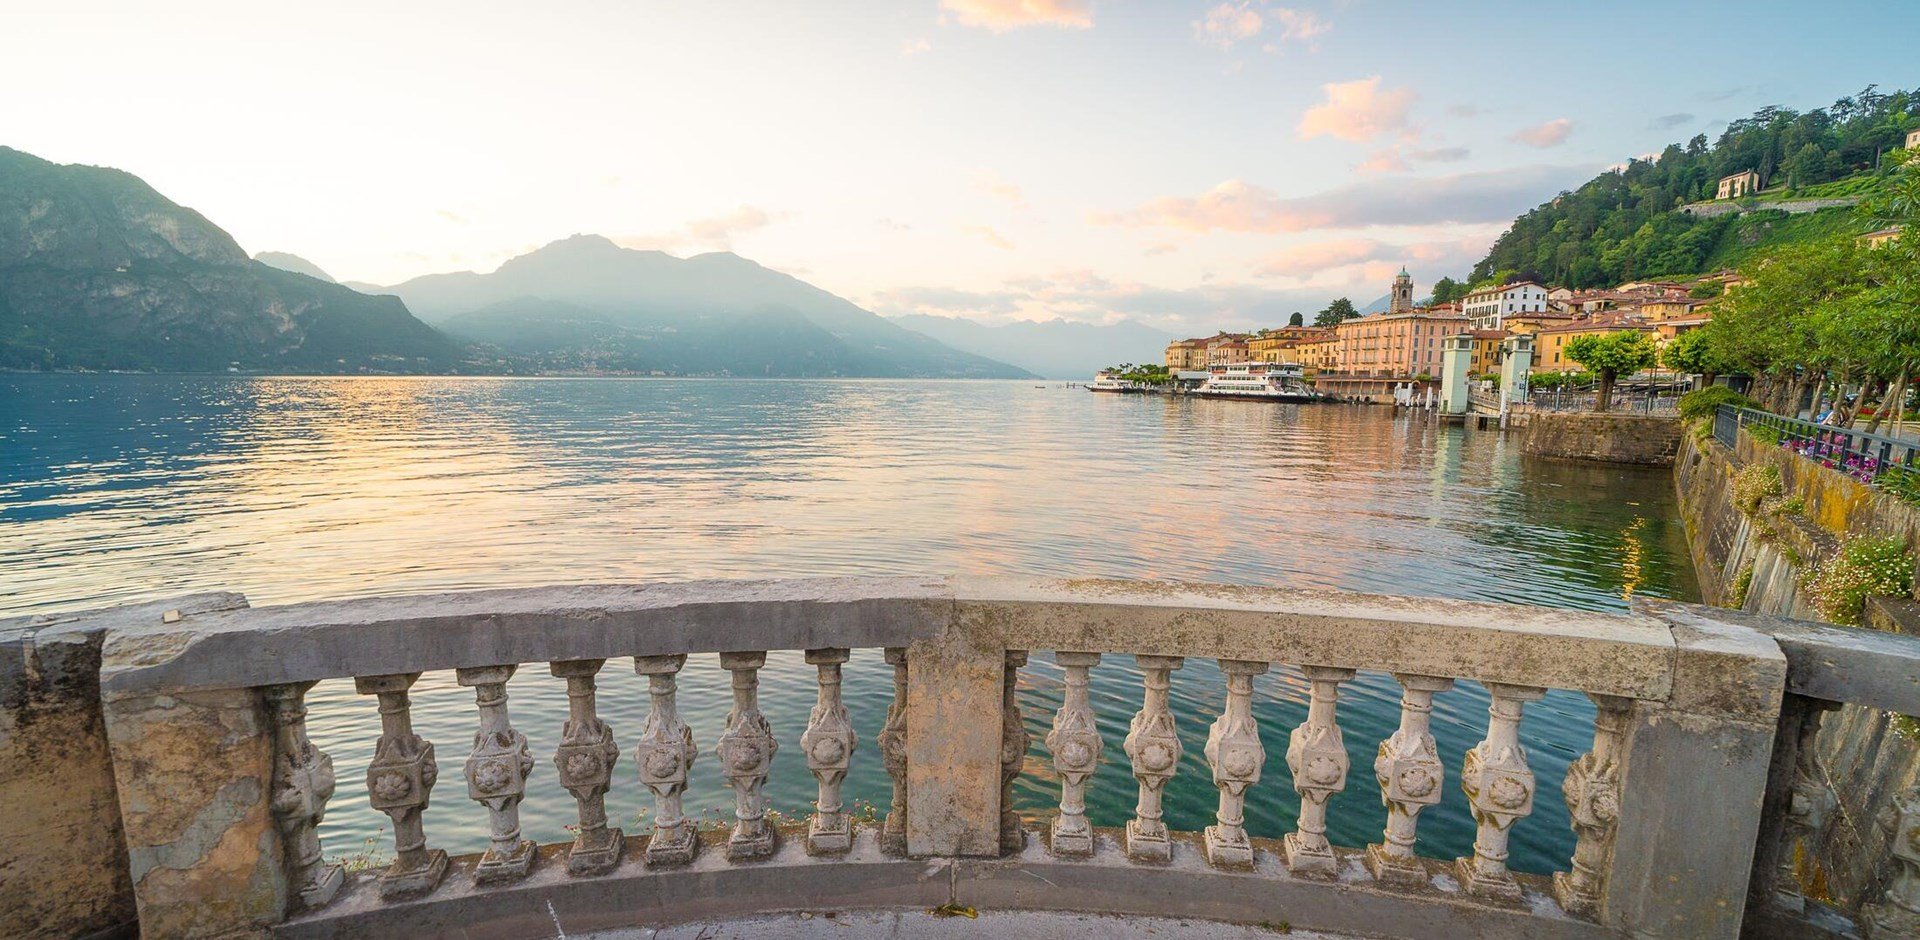 Beaufitul romantic scenery of Bellagio on Como lake in Lombardy